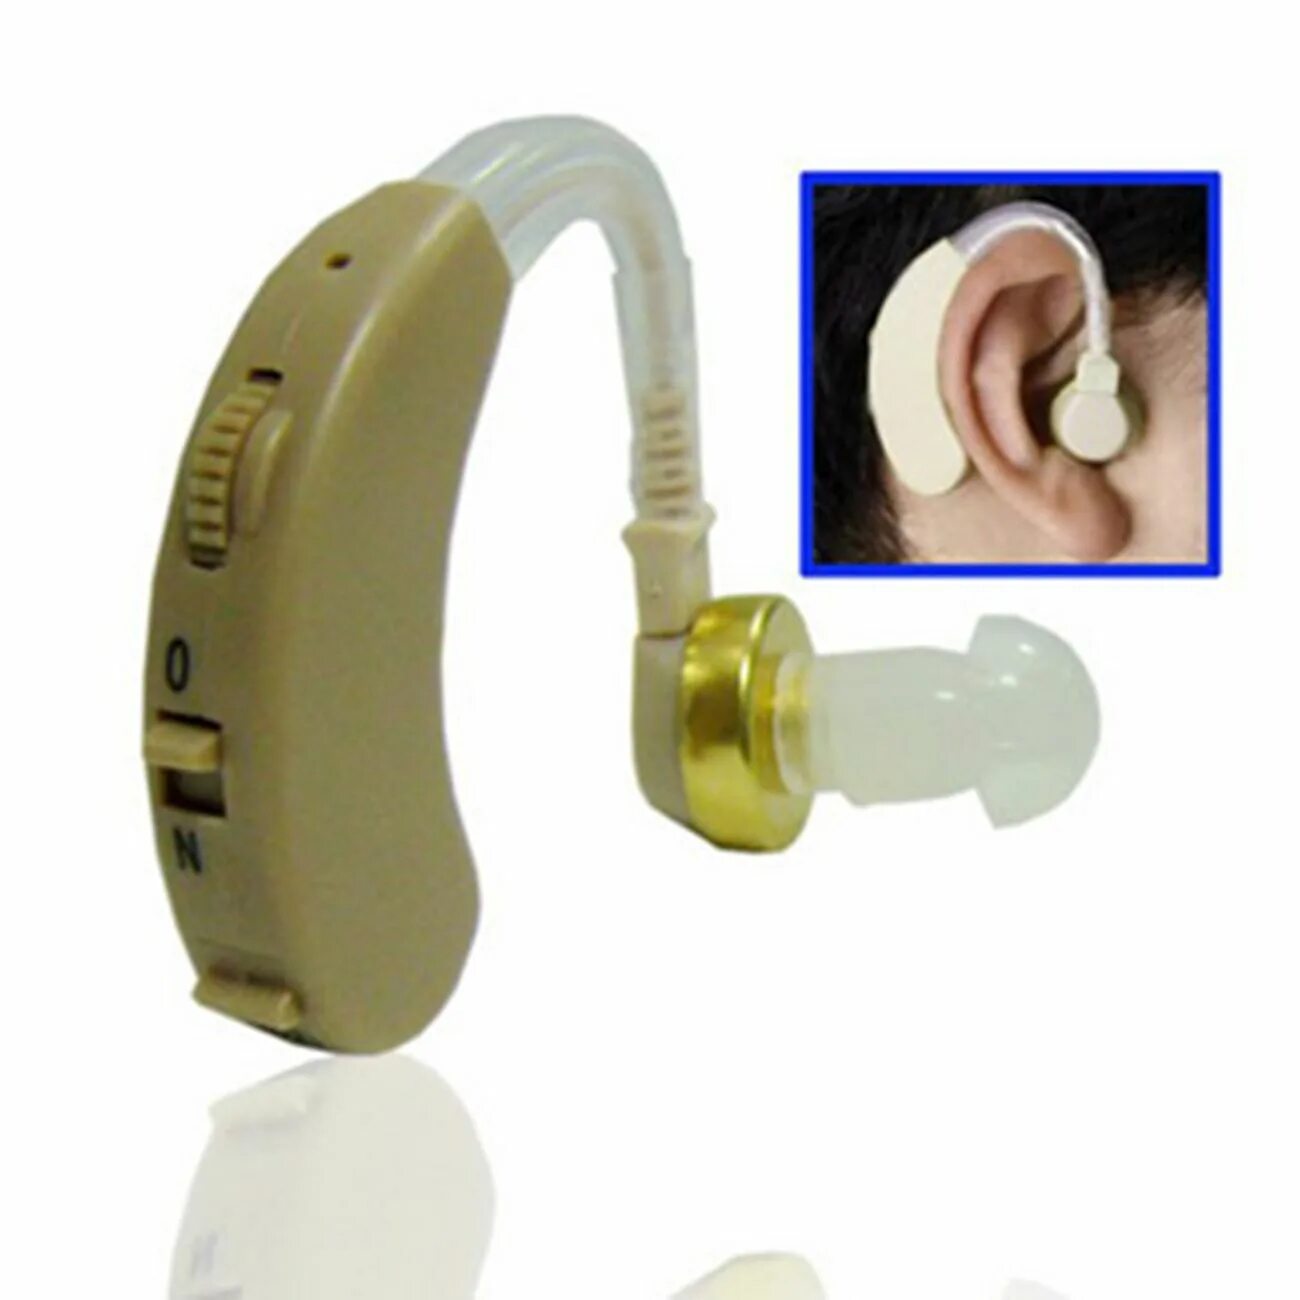 VITEC 220 слуховой аппарат. Слуховой аппарат leomax. Слуховой аппарат Tondi. Слуховой аппарат apa2308. Купить слуховой аппарат интернет магазине